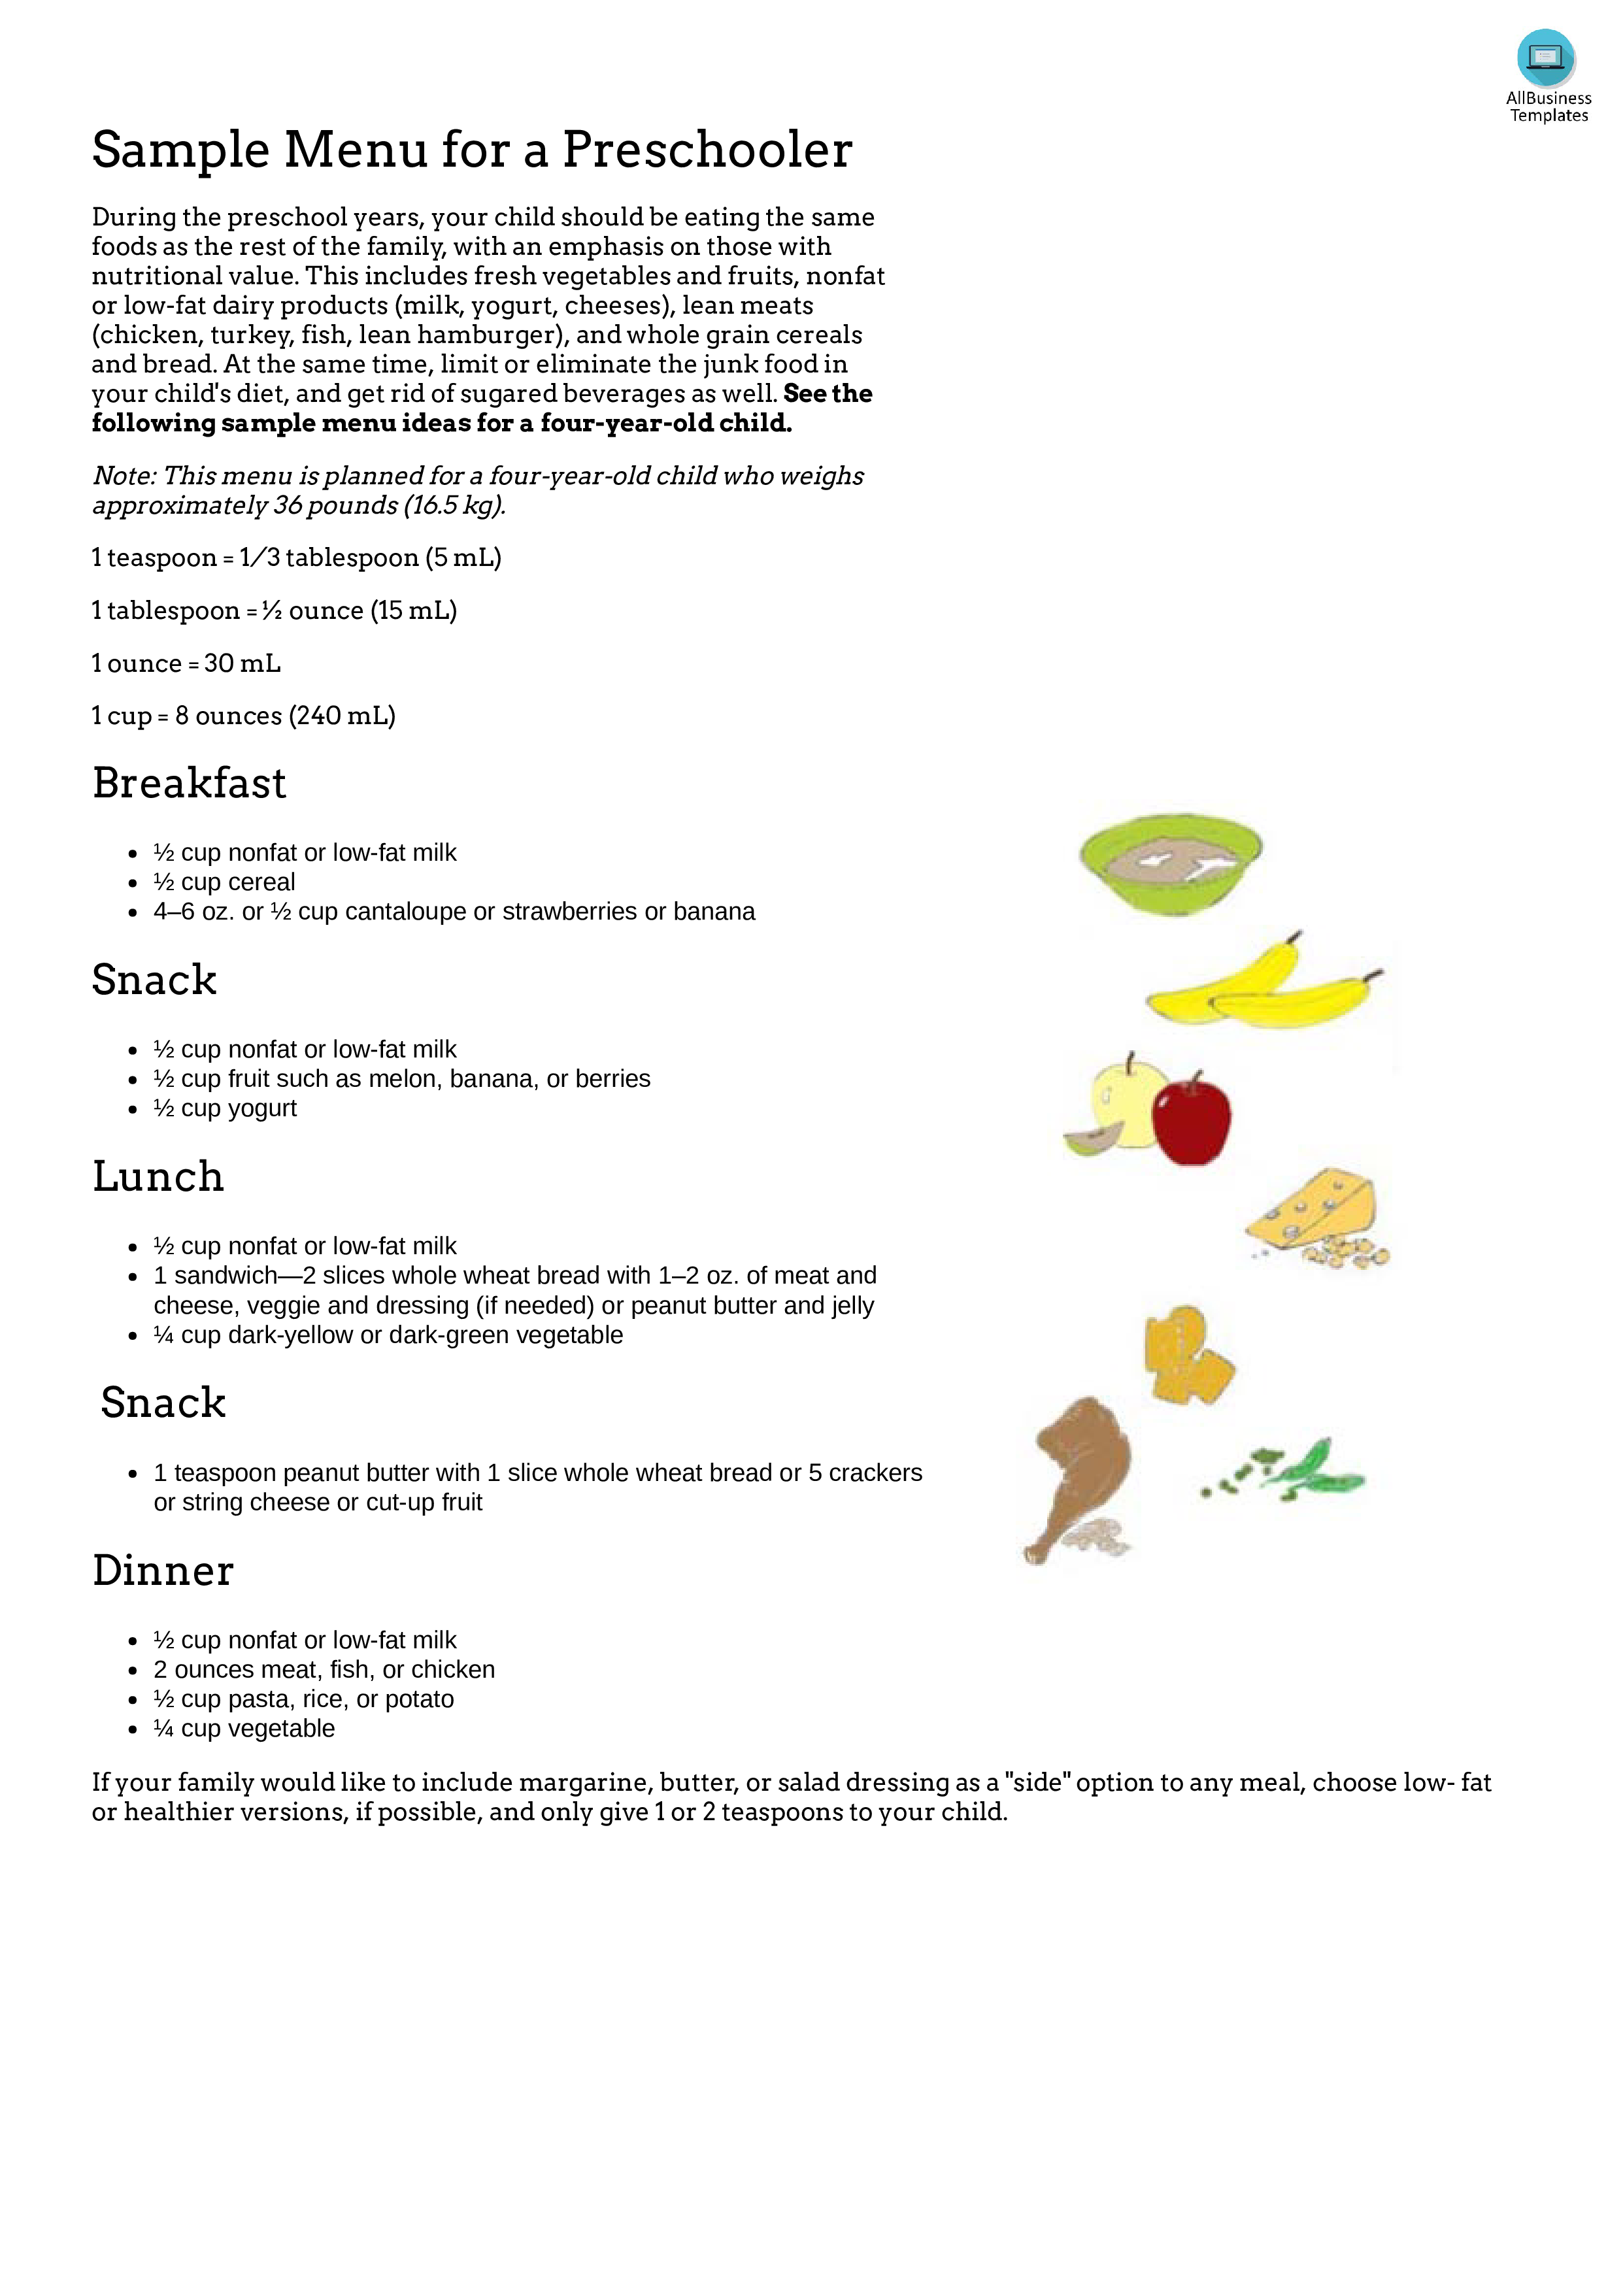 preschool meal plan plantilla imagen principal